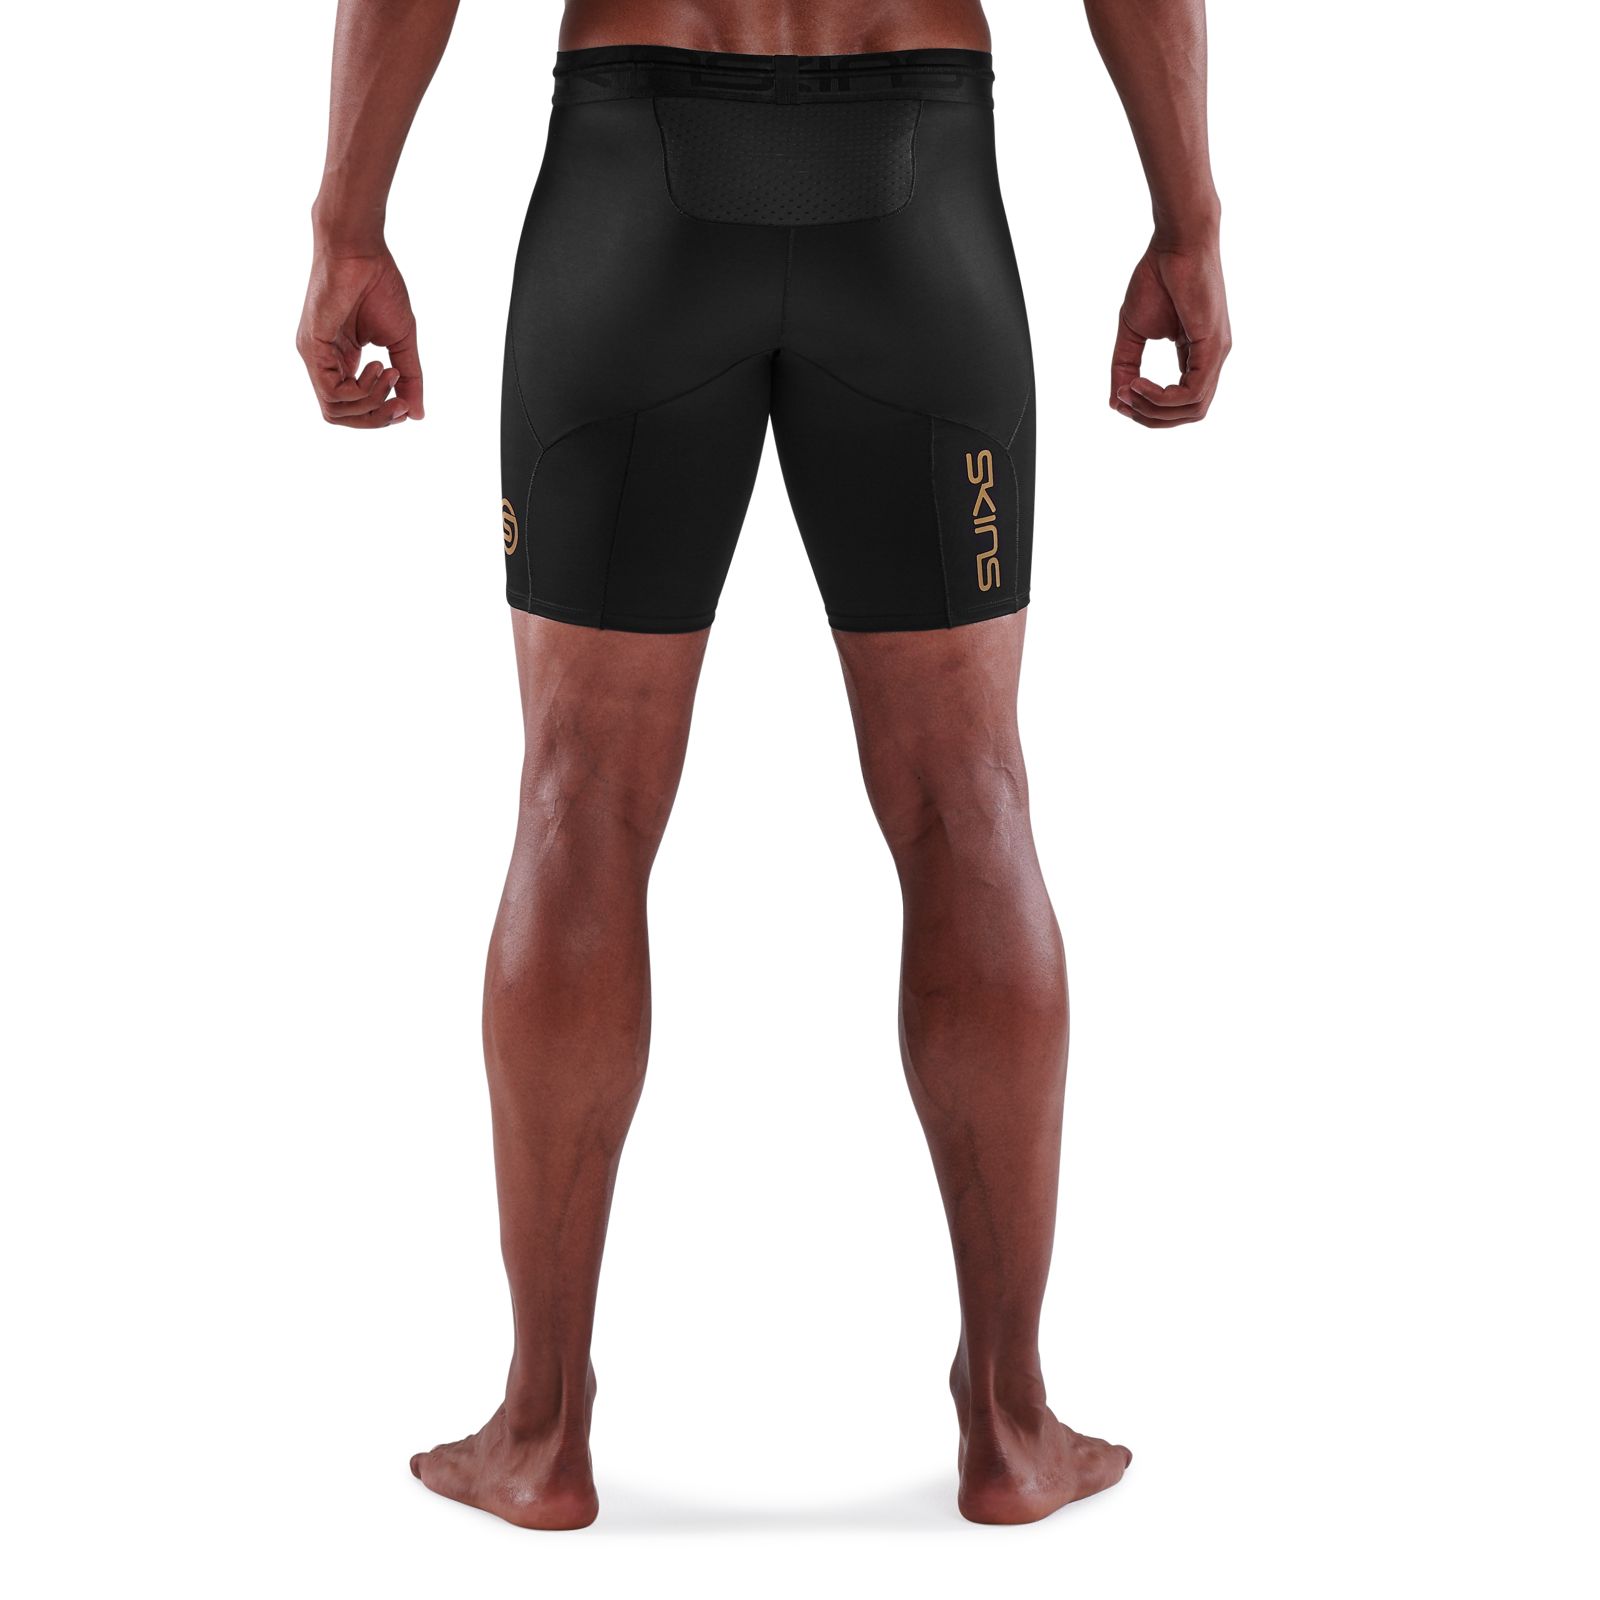 SKINS SERIES-1 Men's Compression Shorts Black